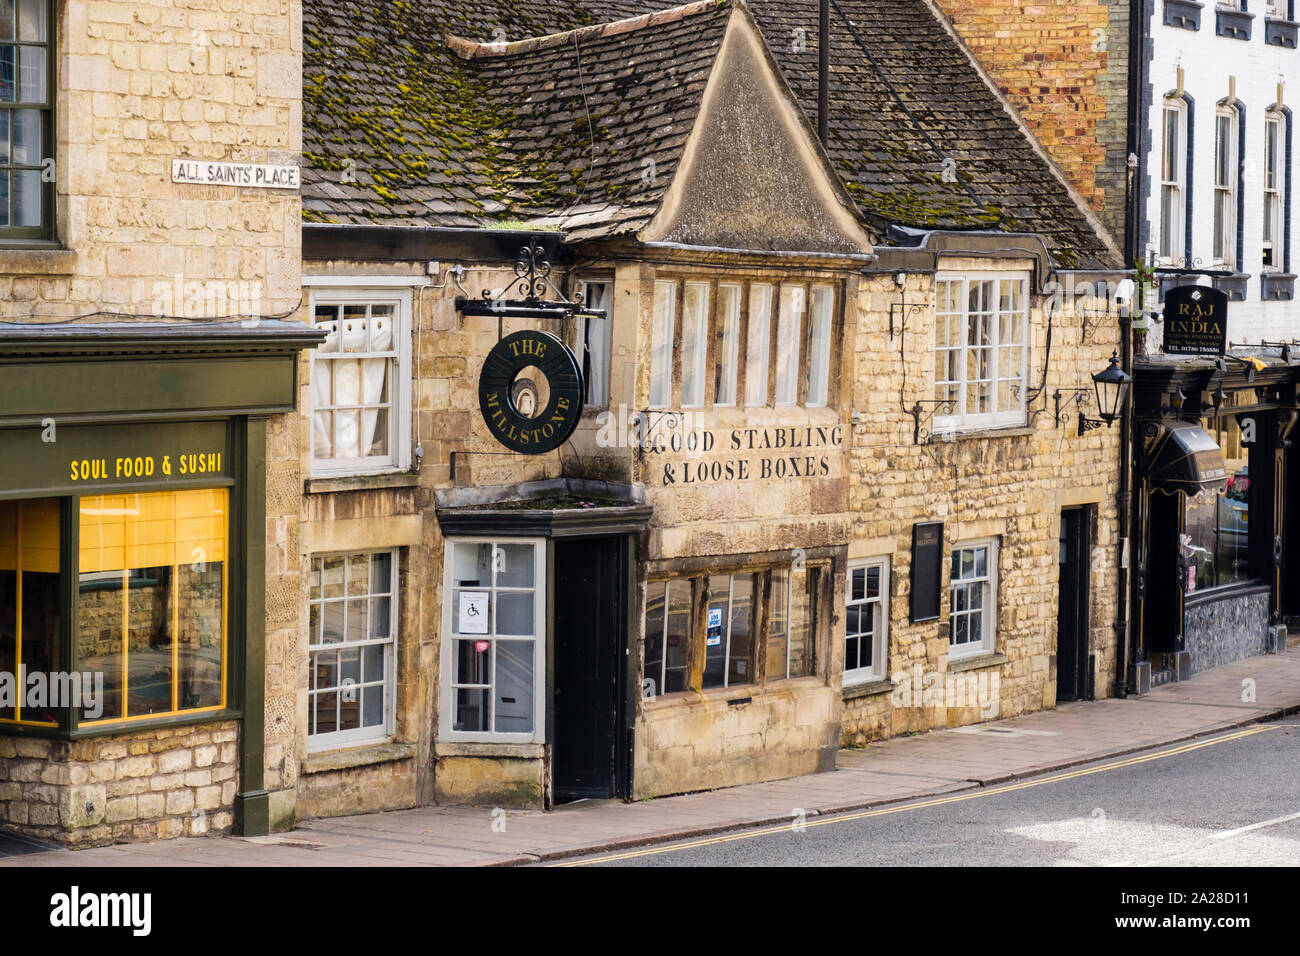 La macina pub in un antico edificio di pietra calcarea. Tutti i Santi posto, Stamford, Lincolnshire, Inghilterra, Regno Unito, Gran Bretagna Foto Stock